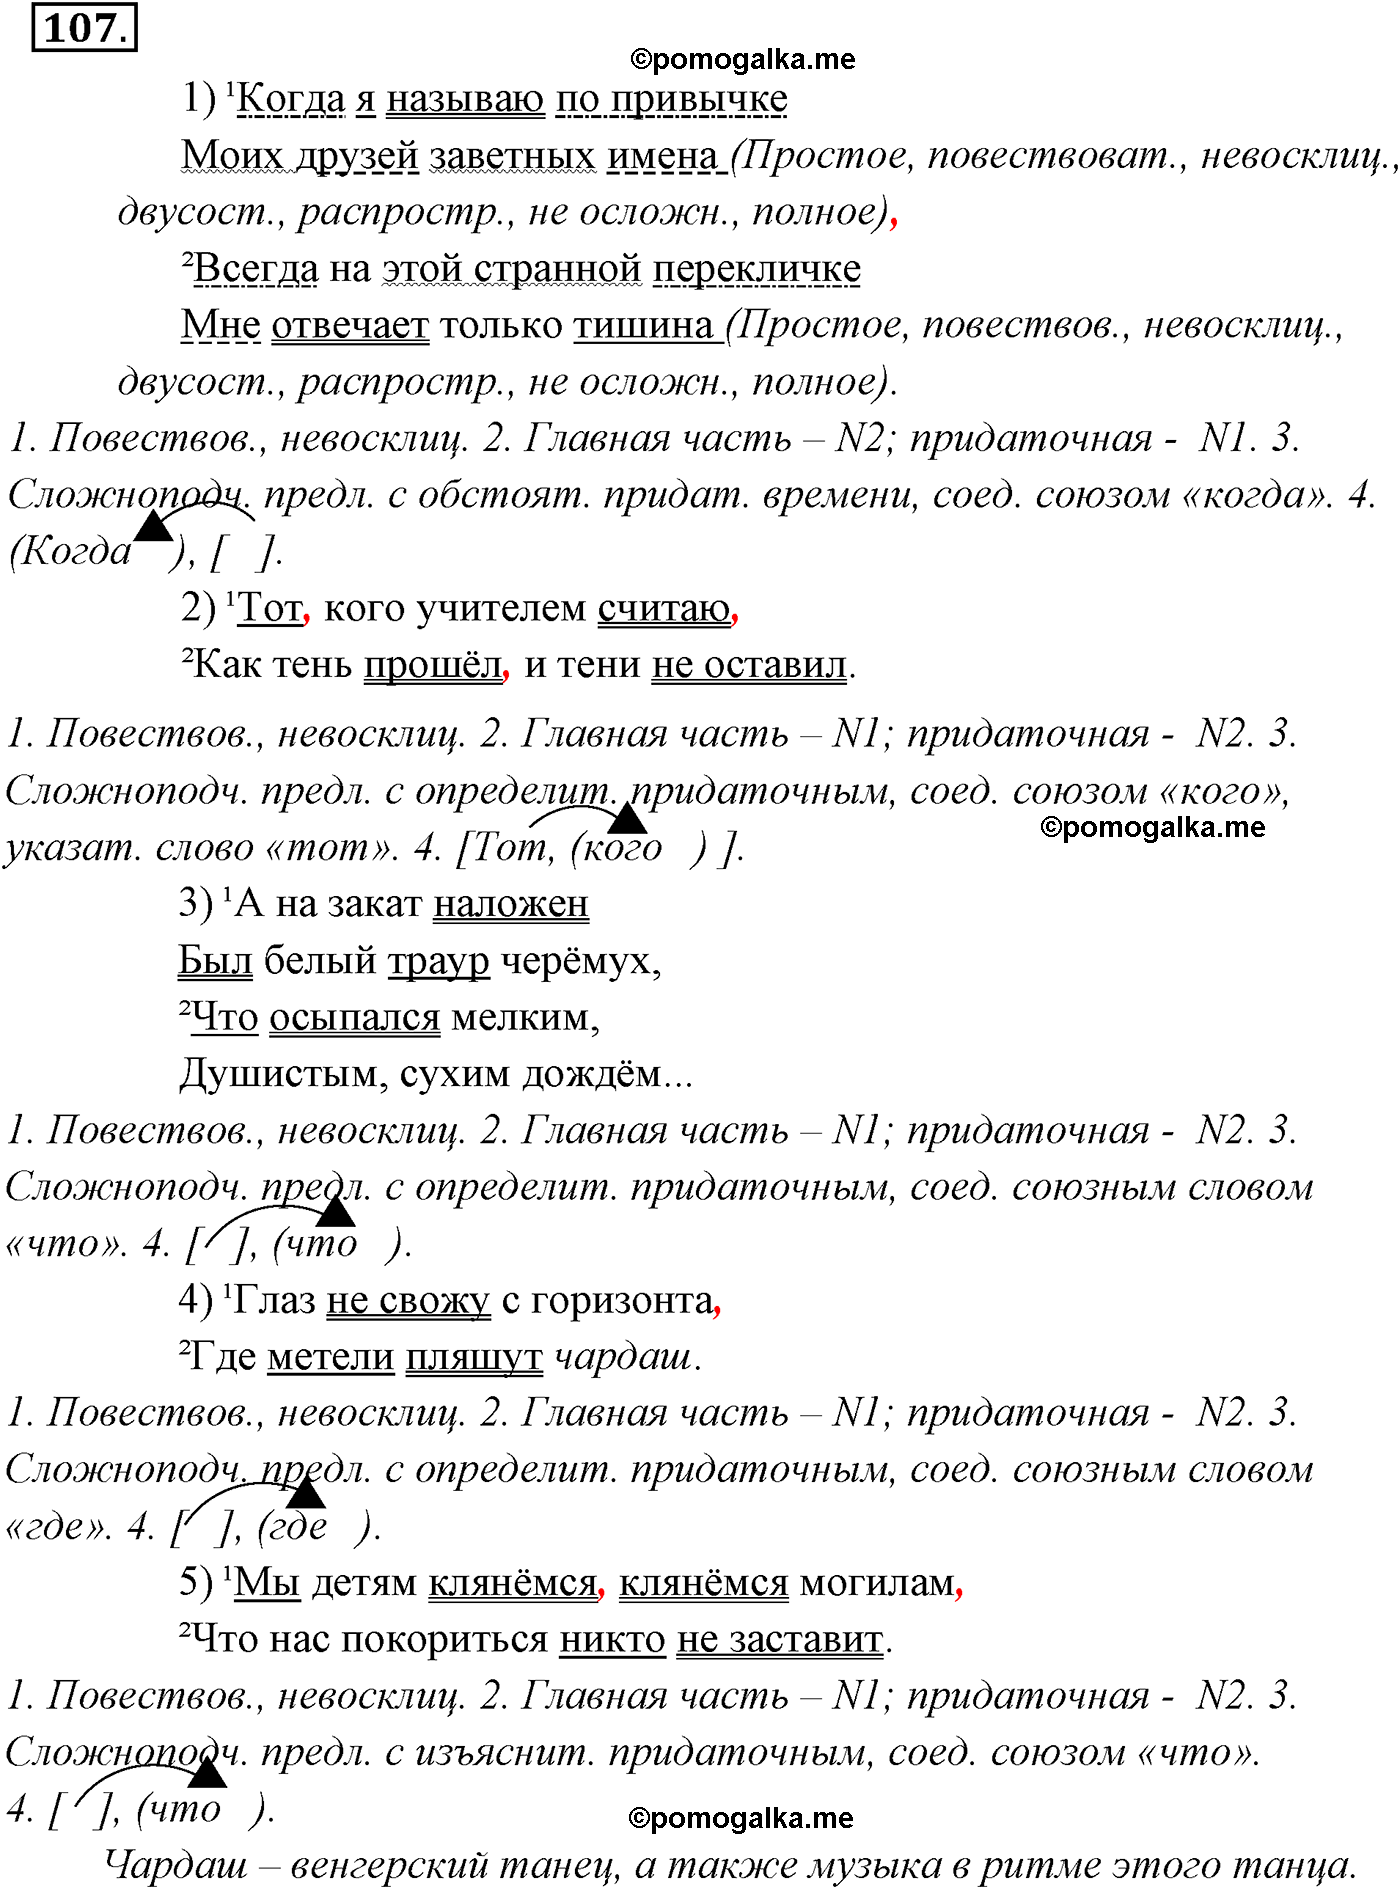 упражнение №107 русский язык 9 класс Разумовская